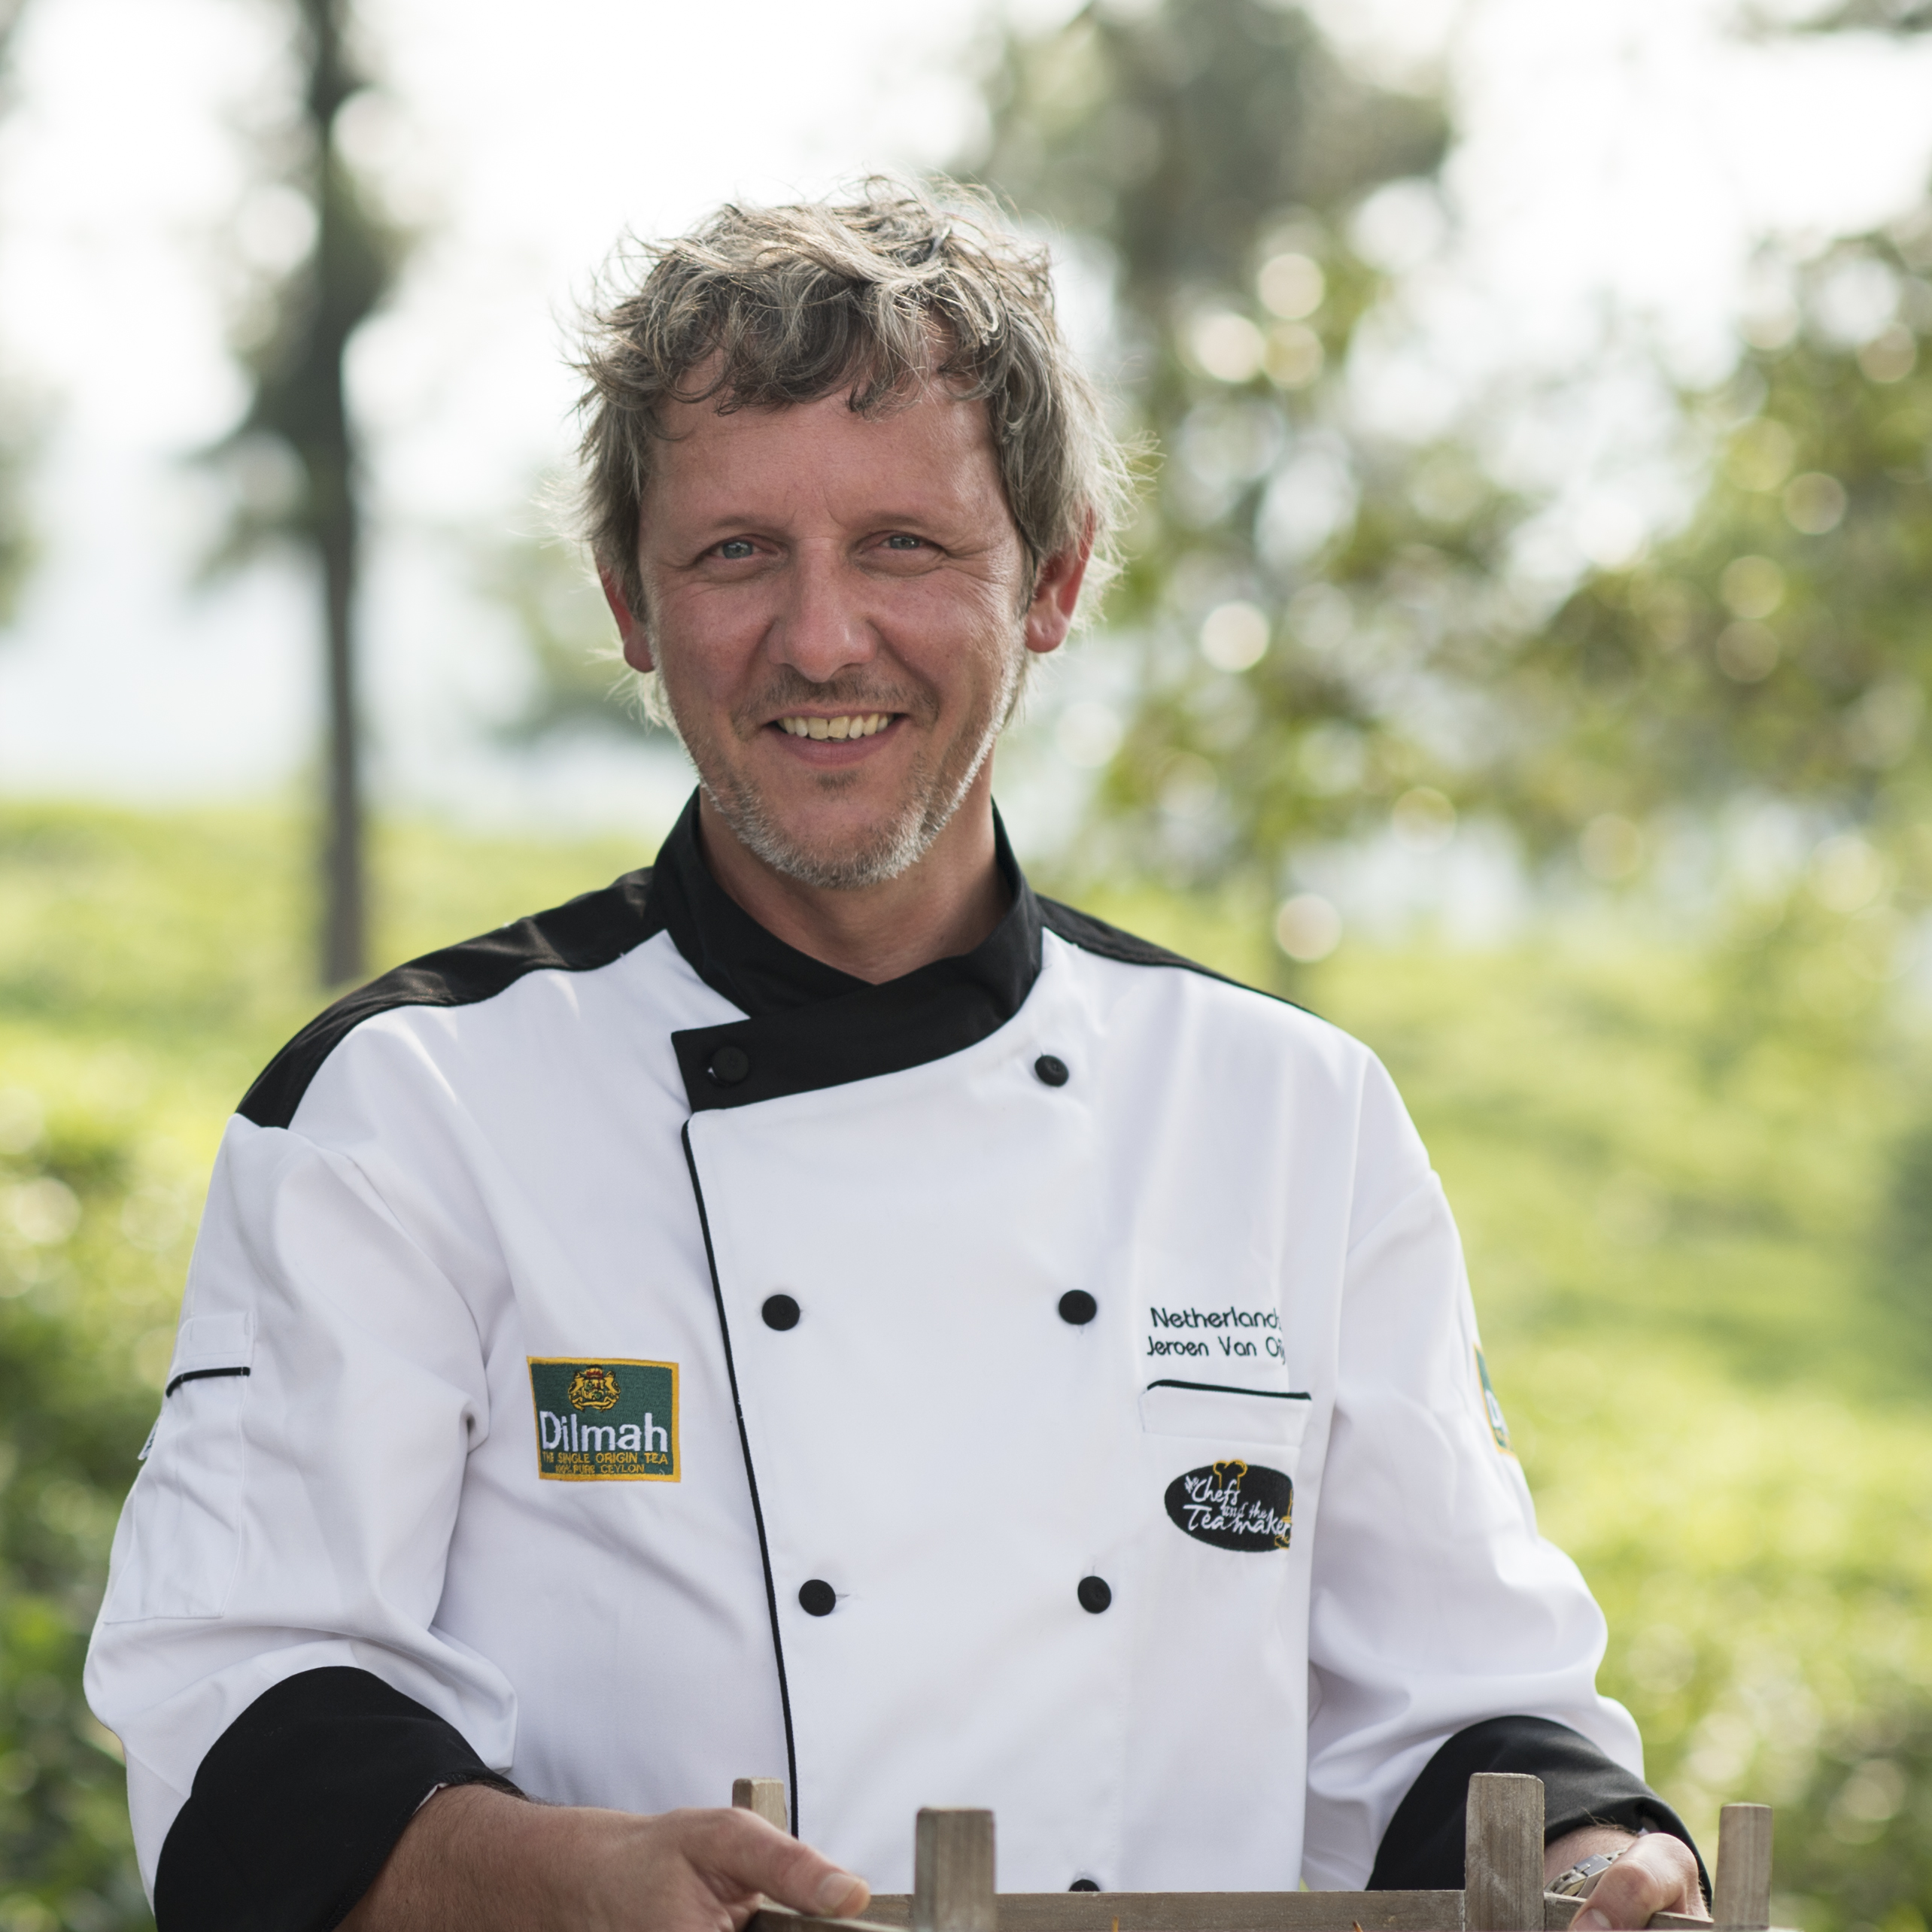 Jeroen Van Oijen - Chef and the Tea Maker